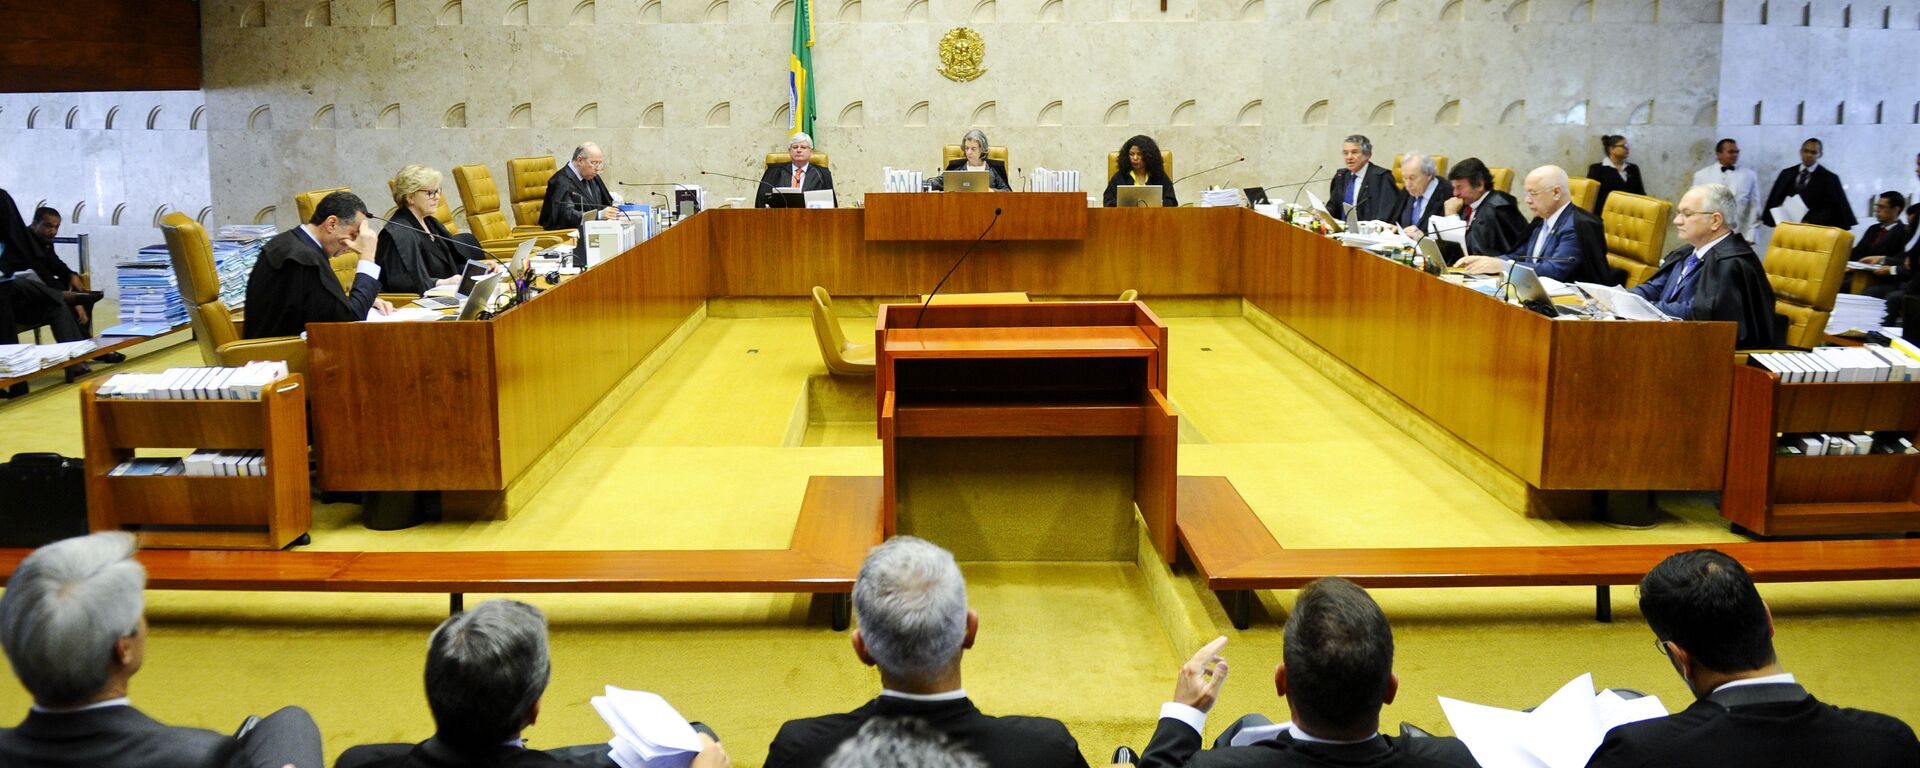 STF julga liminar que afastou Renan Calheiros do cargo de presidente do Senado Federal - Sputnik Brasil, 1920, 12.09.2018